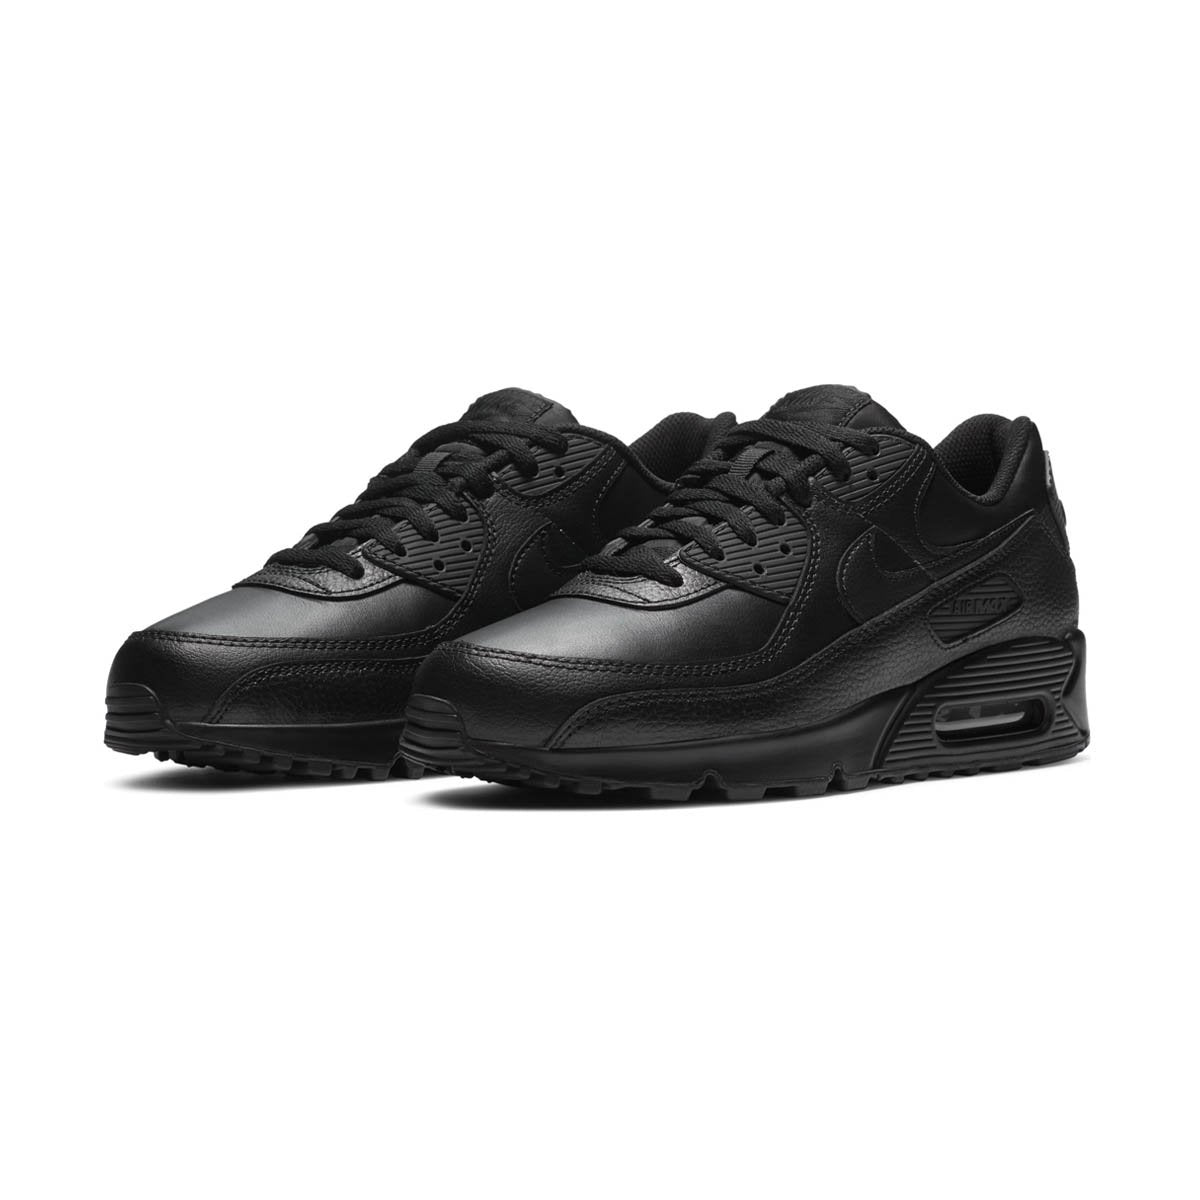 Air Max 90 LTR Men's Shoe | Millennium Shoes